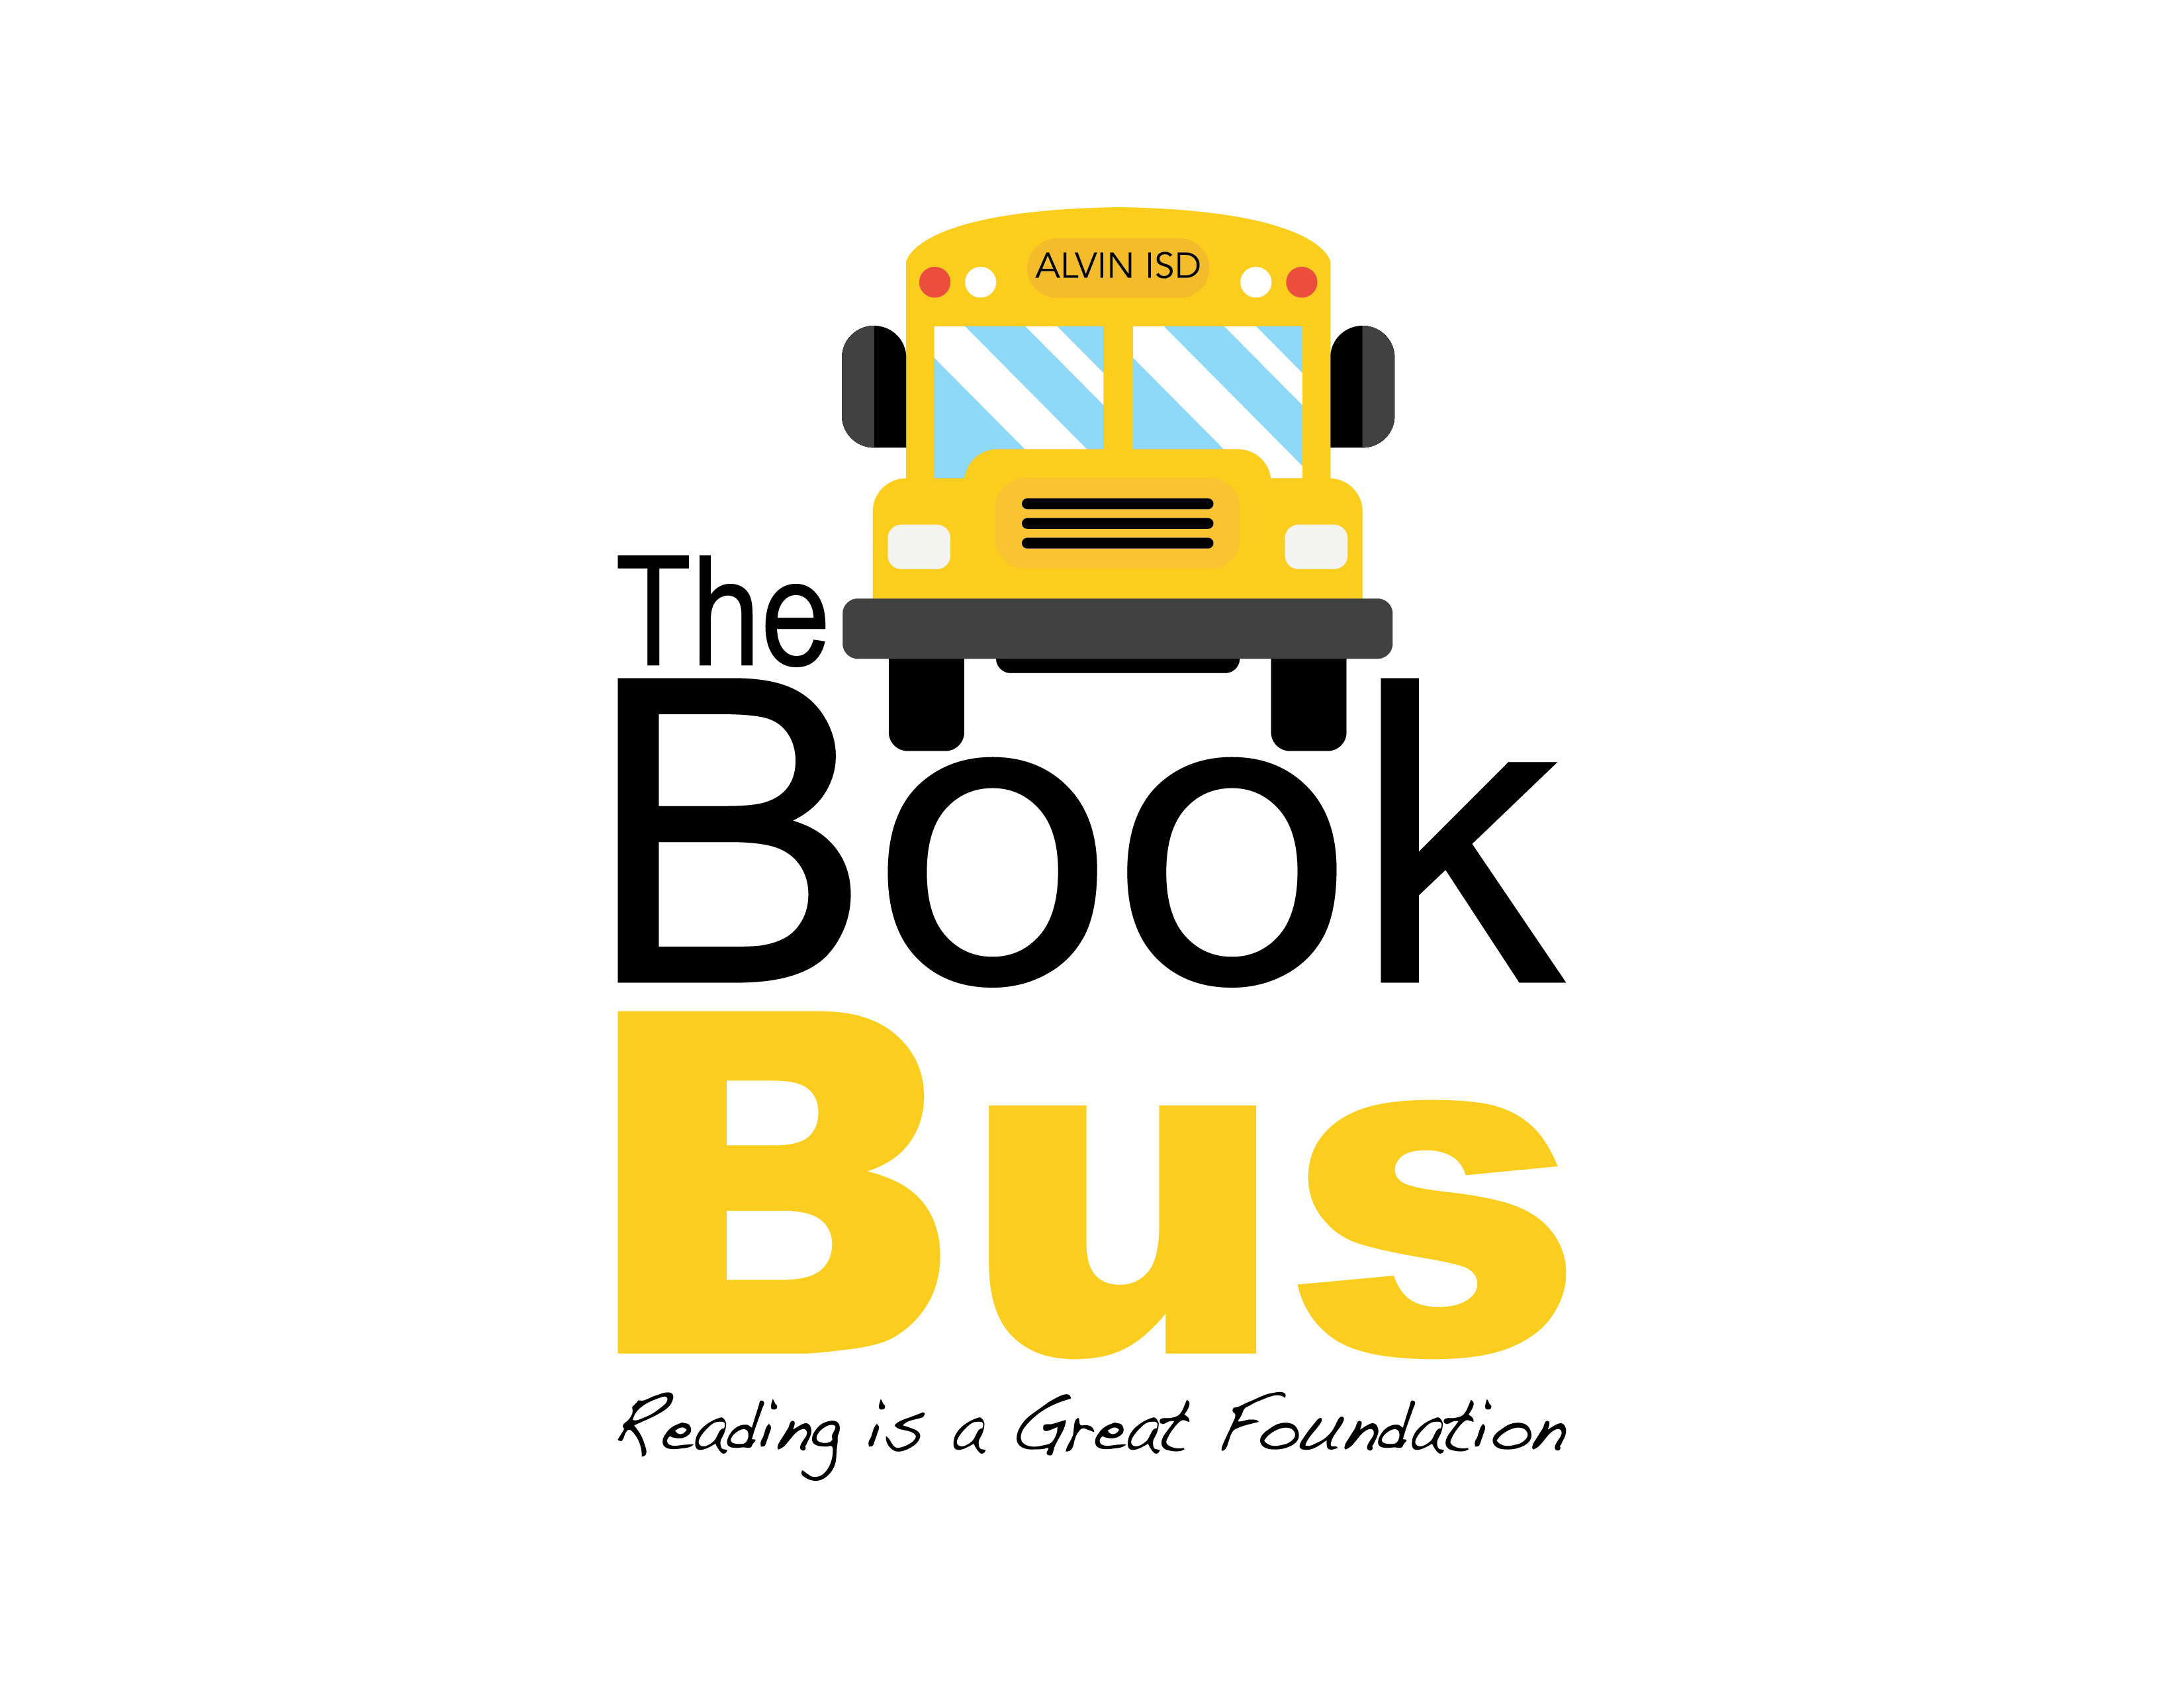 Alvin ISD Book Bus logo